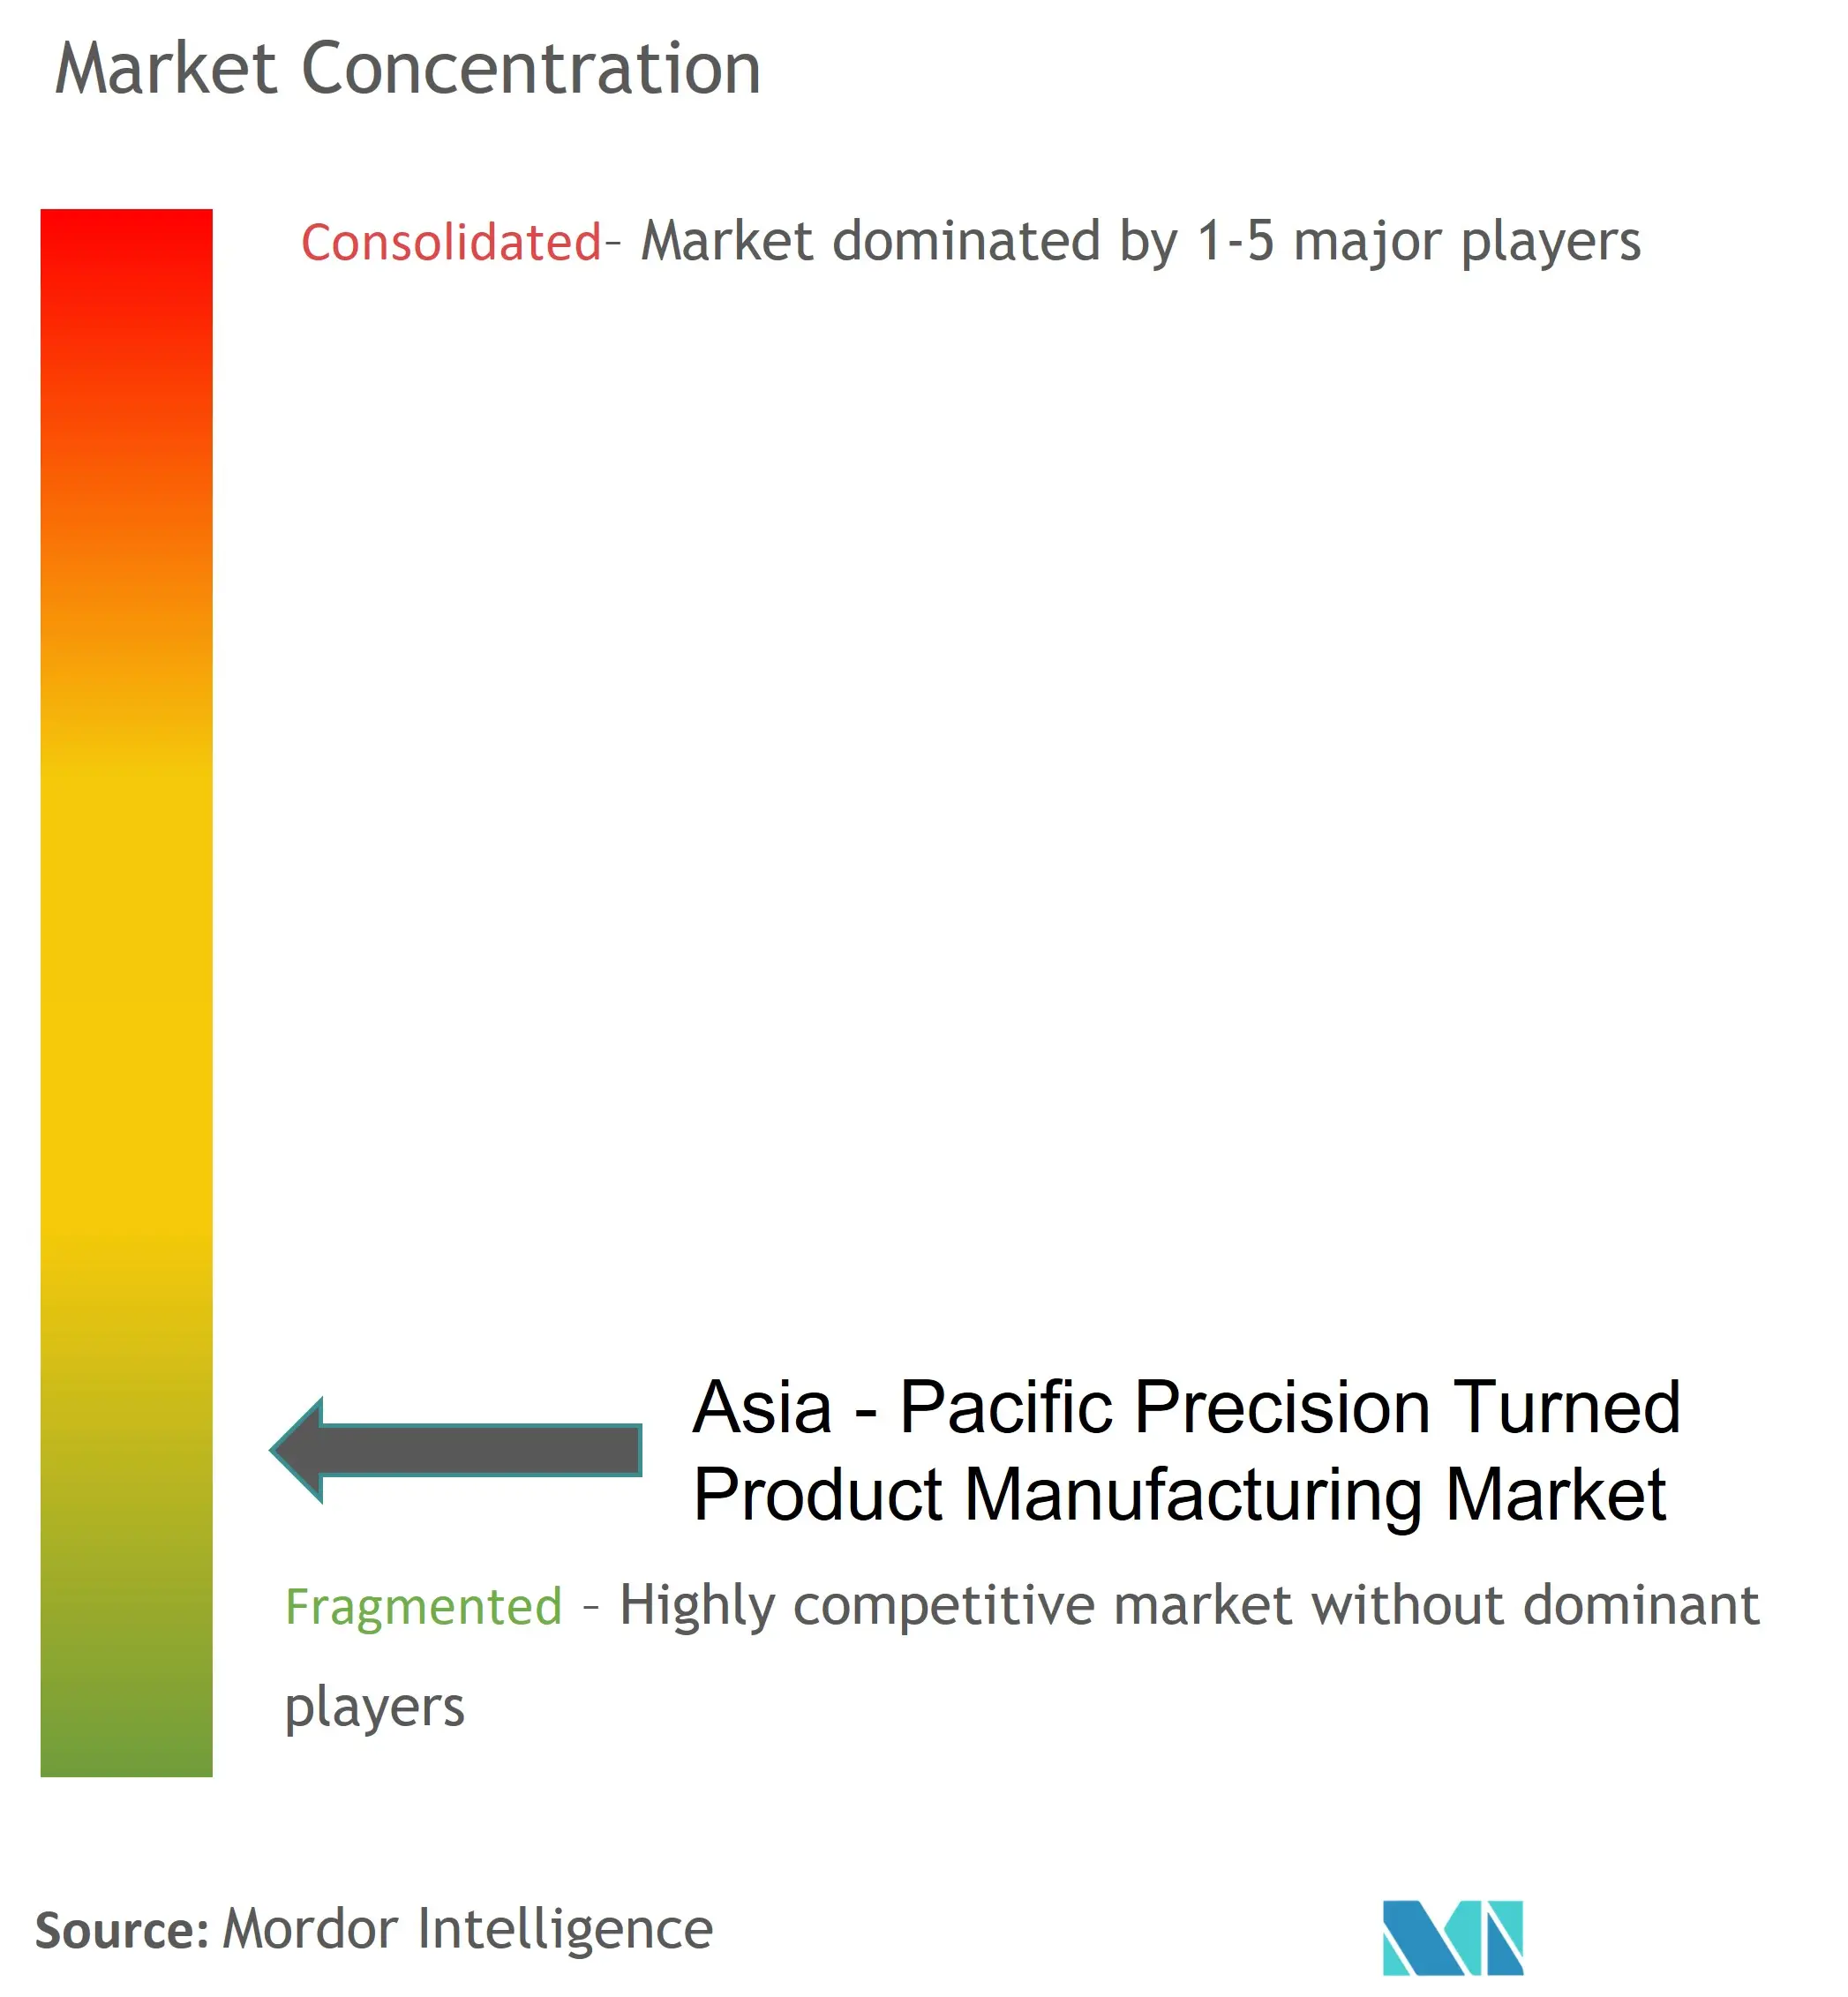 アジア太平洋地域の精密旋盤加工品製造市場の集中度